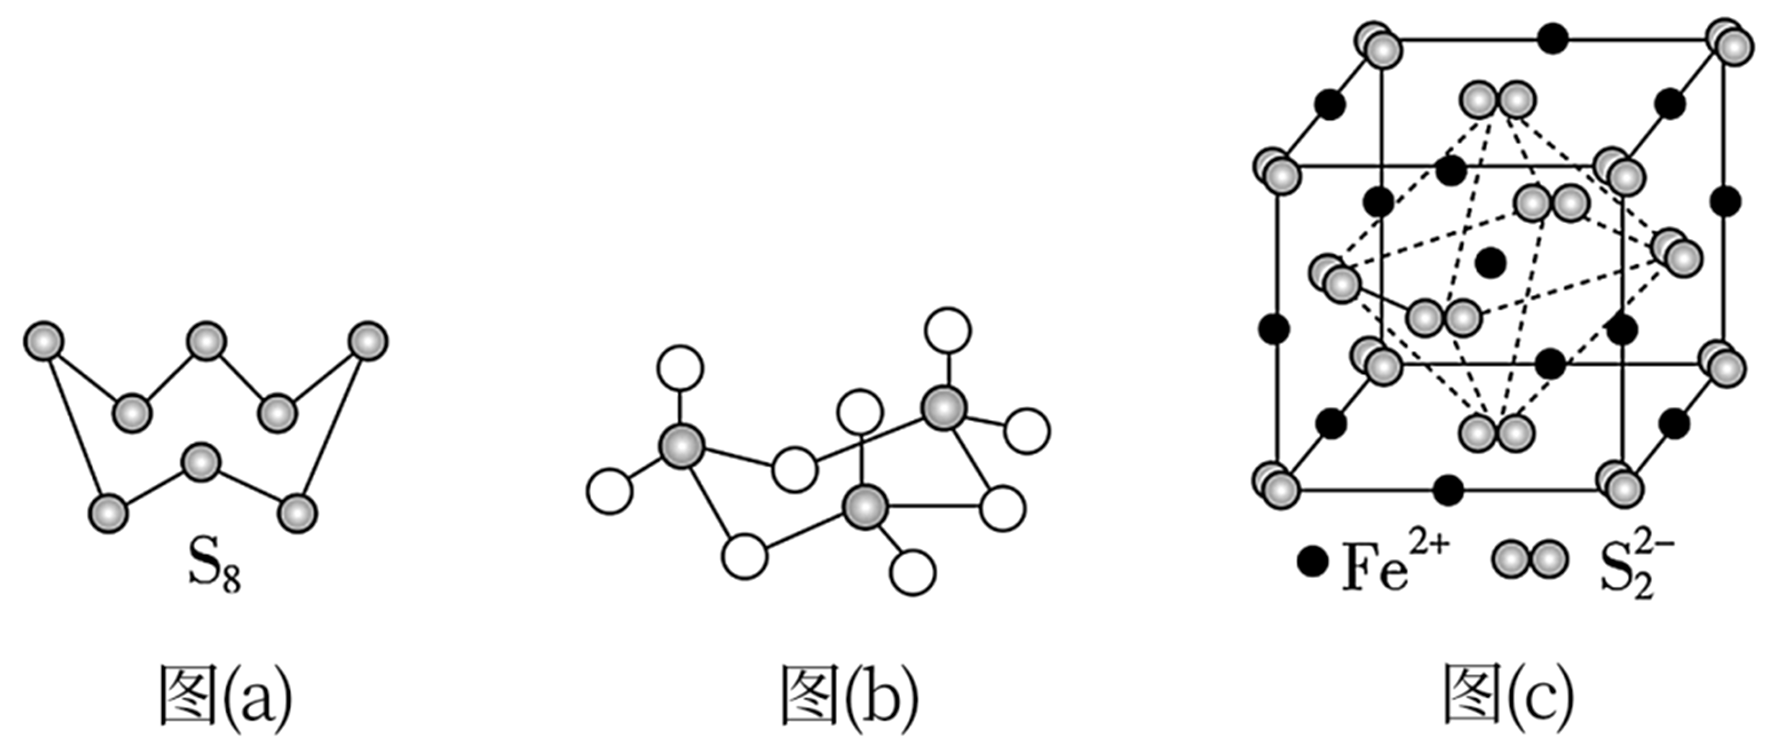 二氧化硫结构图图片